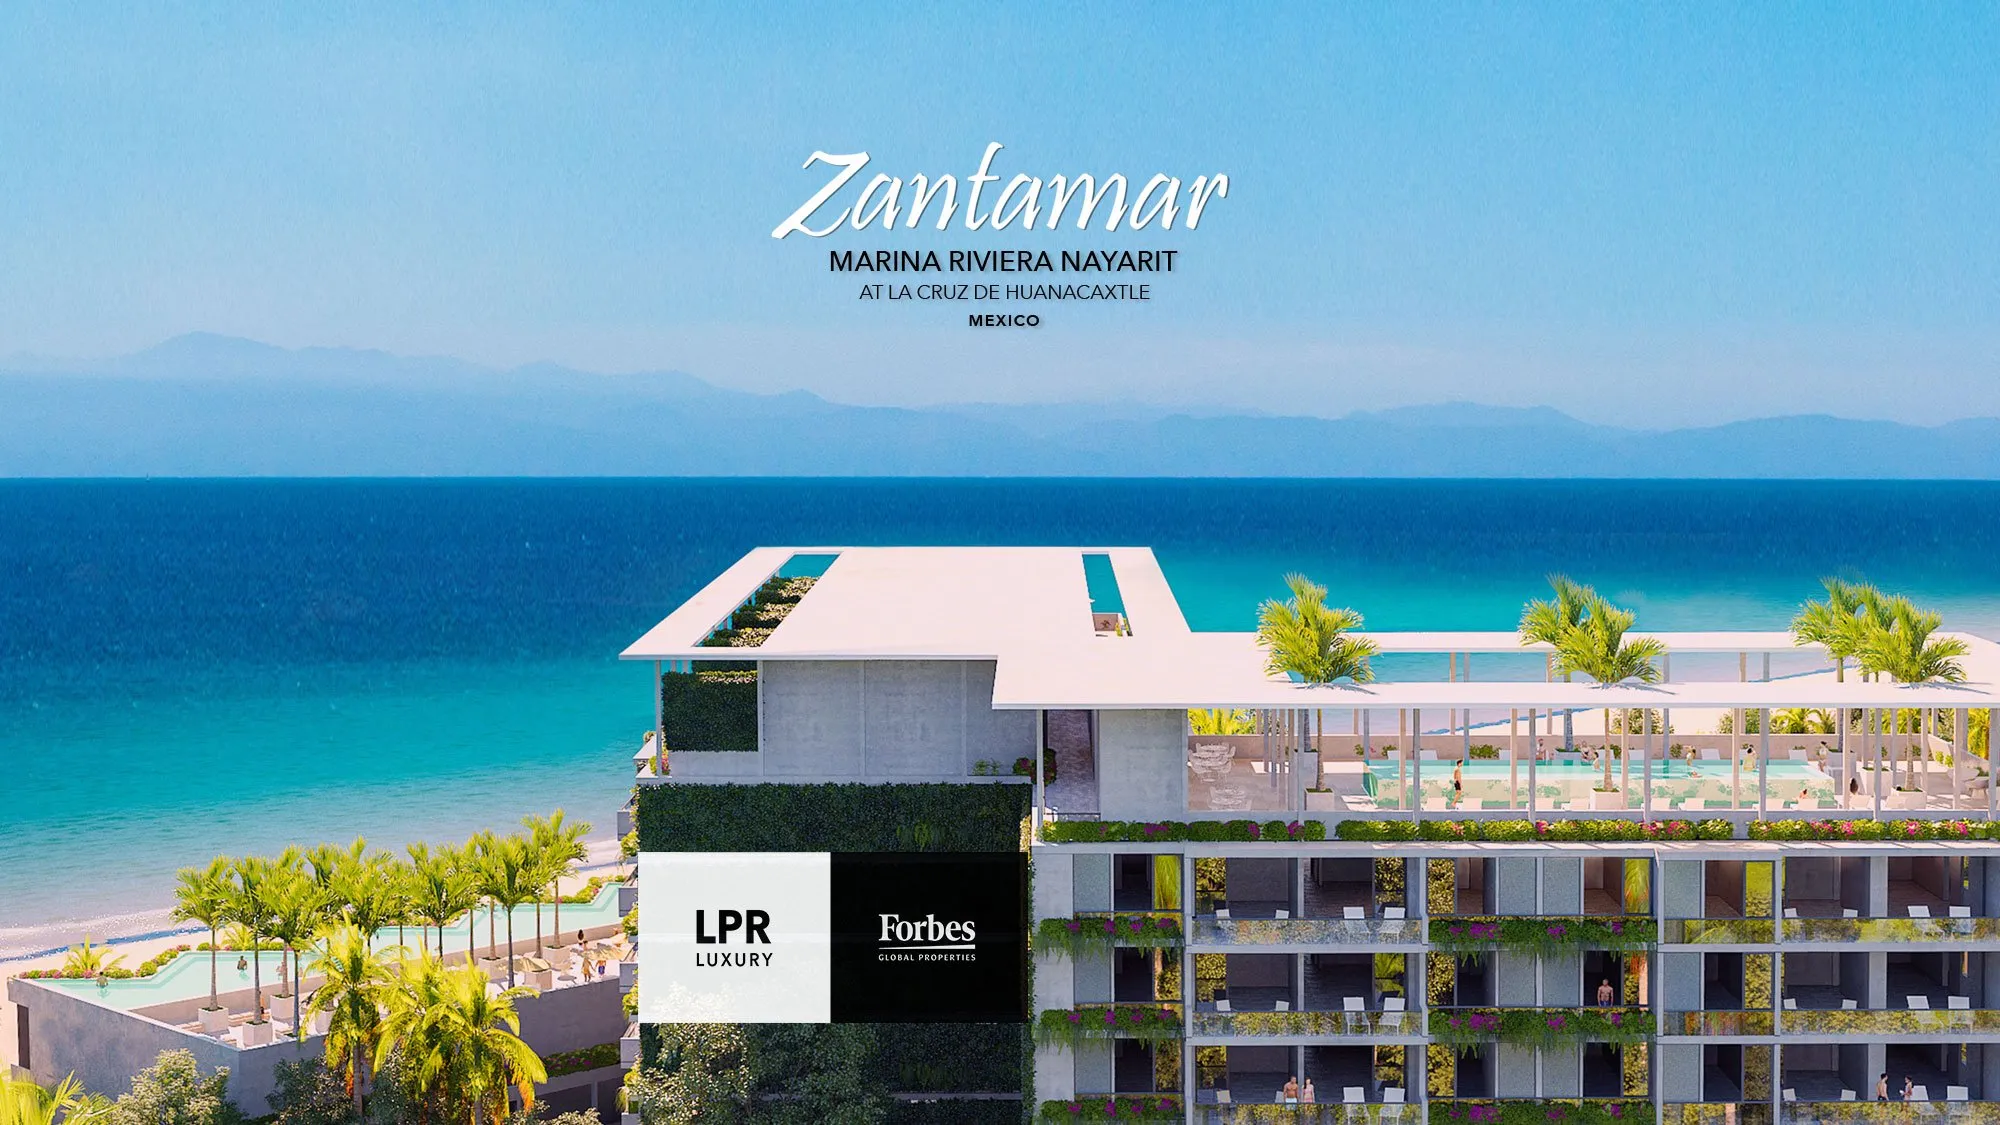 Zantamar - Beachfront condos at Marina Riviera Nayarit, La Cruz de Huanacaxtle, Mexico - Condos for sale - real estate